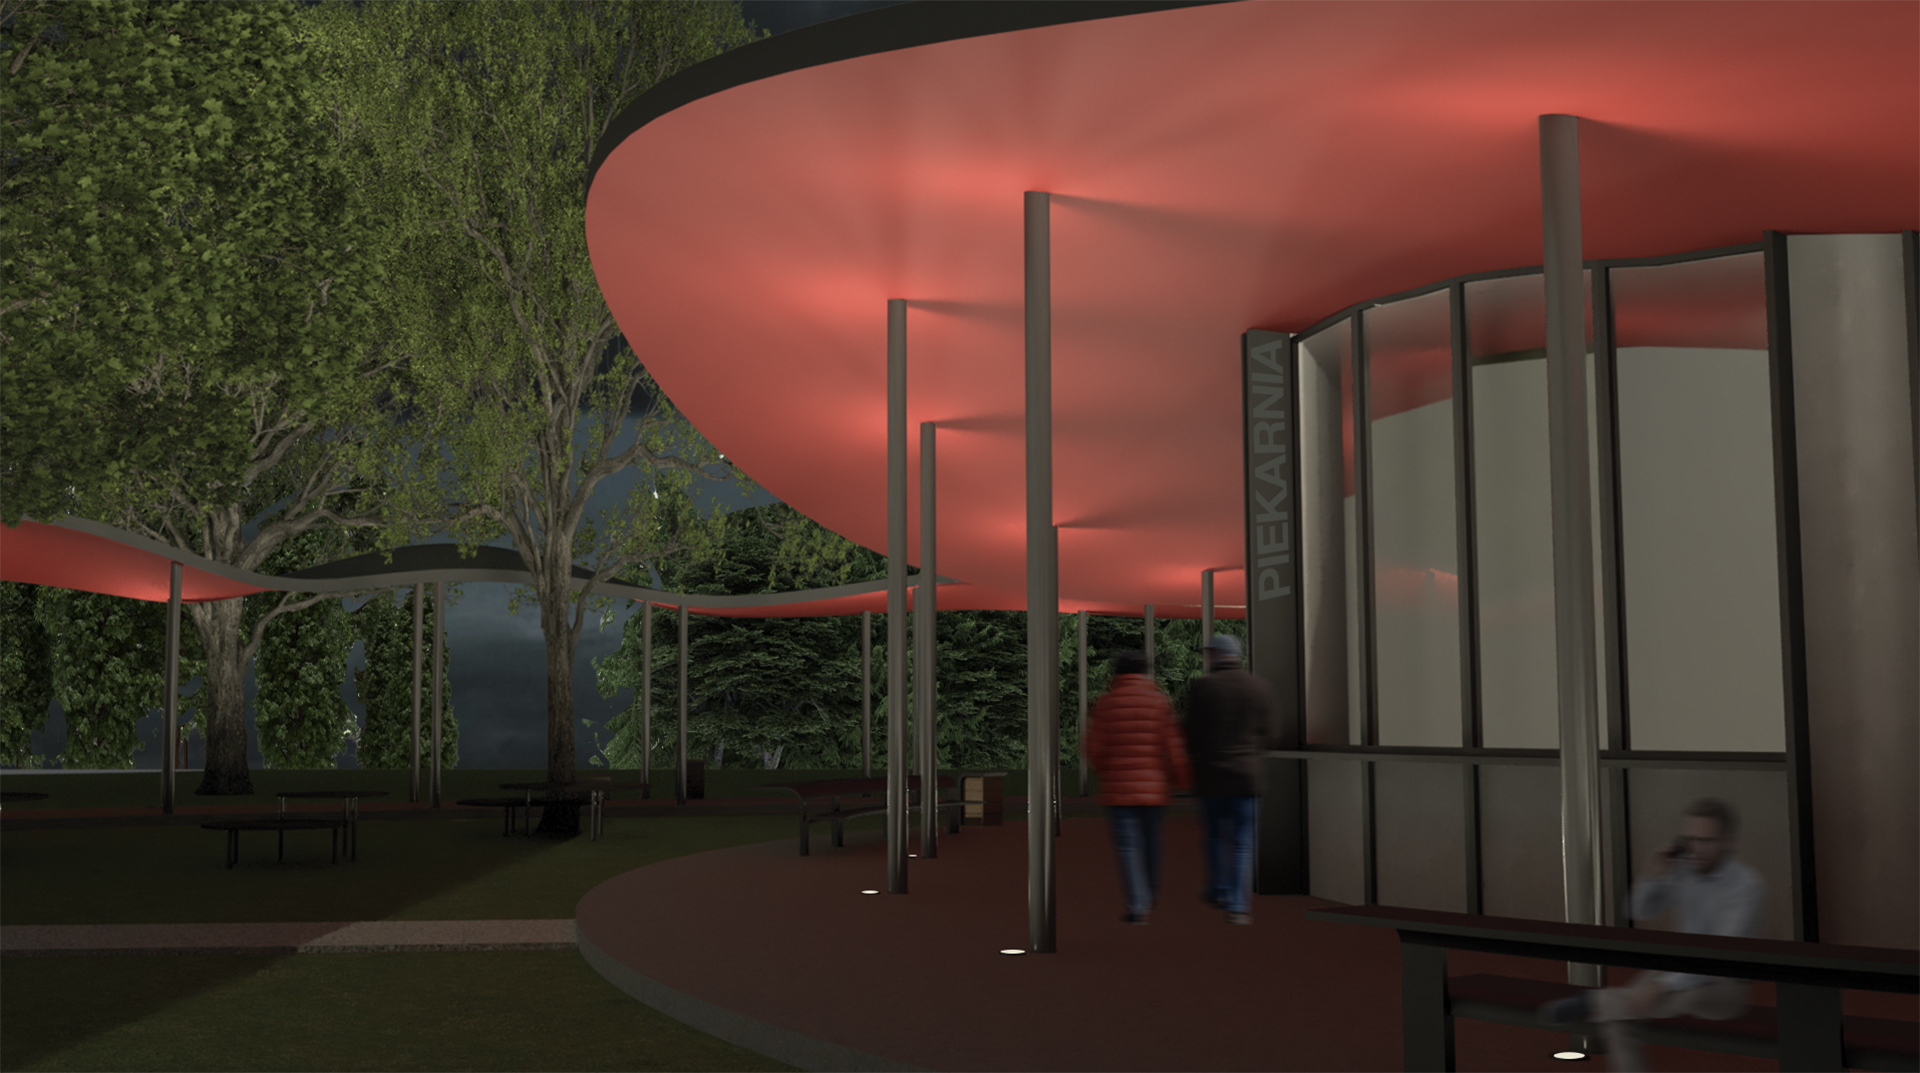 Barwna wizualizacja widoku nocnego fragmentu parku oraz fasady frontowej pawilonu gastronomicznego.